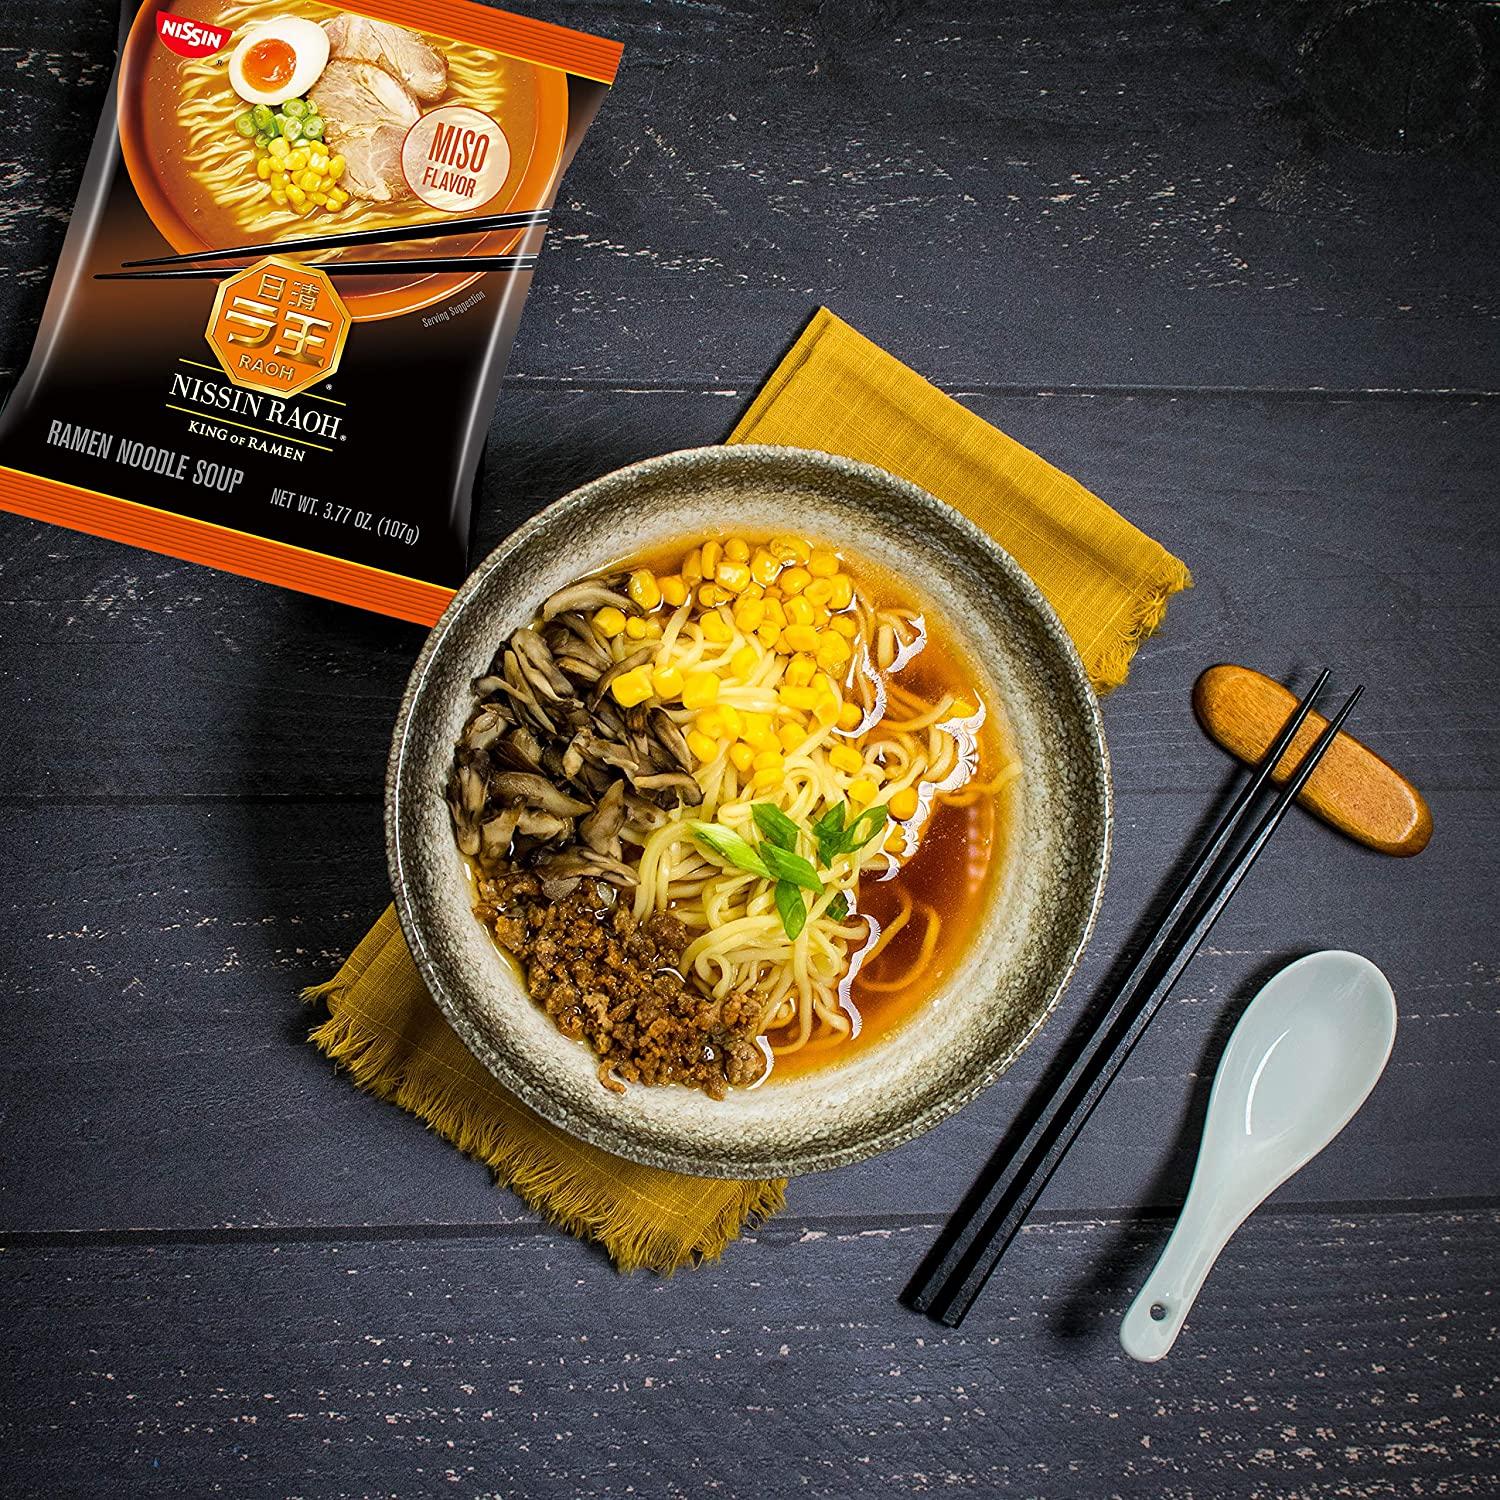 Nissin Raoh Miso Flavor Ramen Noodle Soup, 3.77 oz - City Market